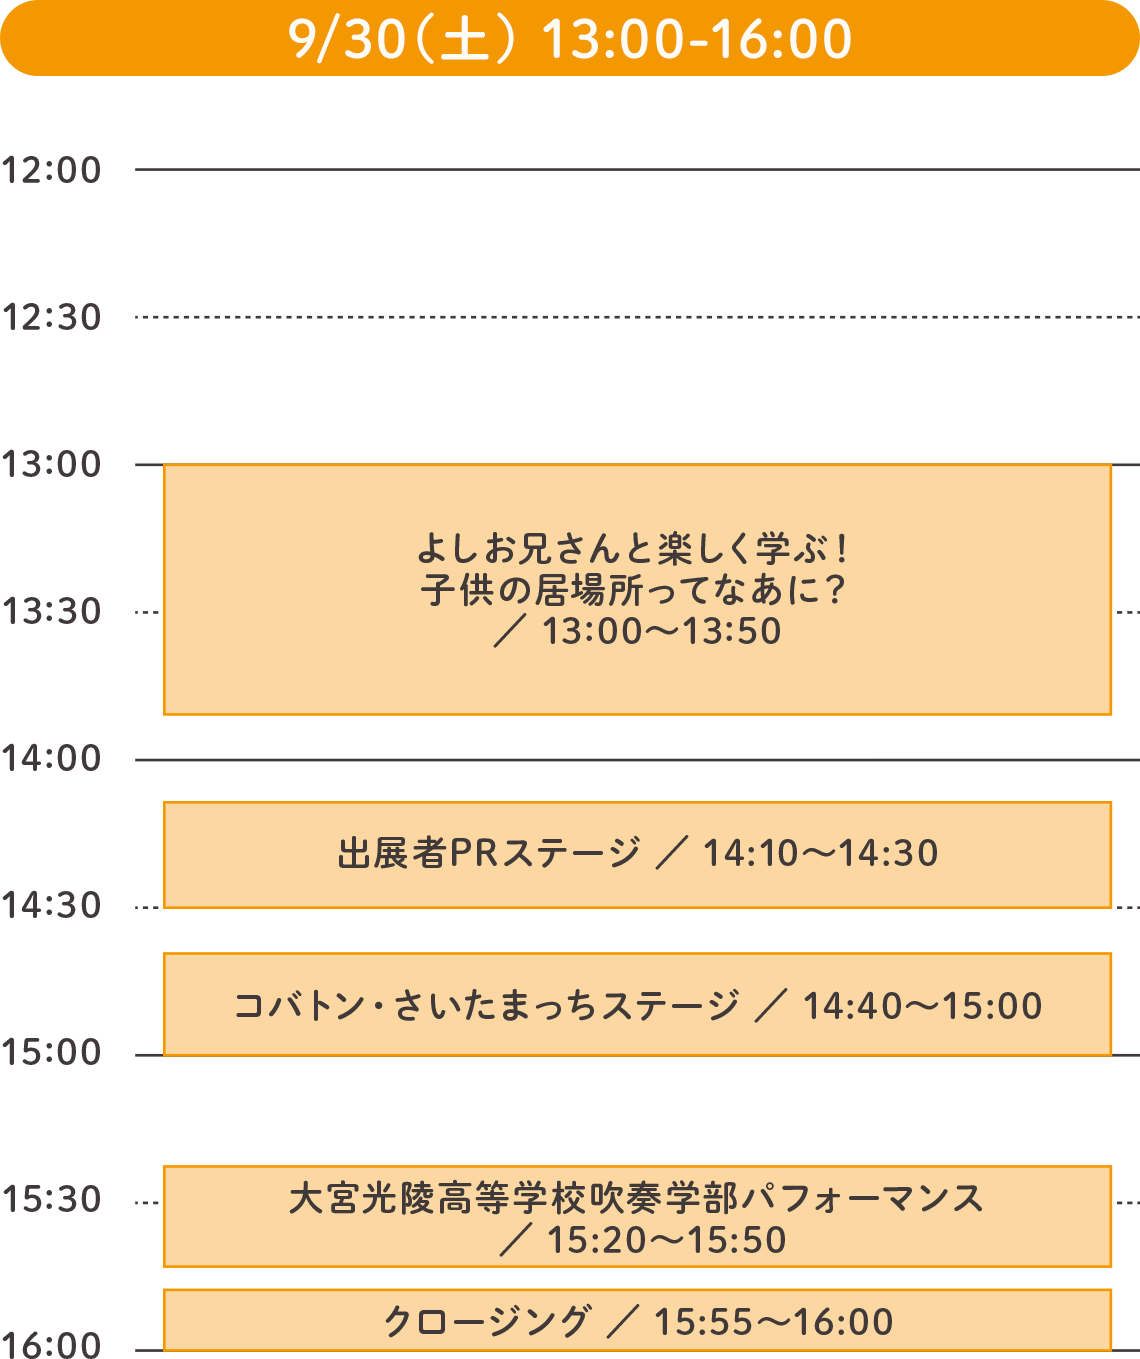 9/30（土）13:00-16:00のステージプログラム